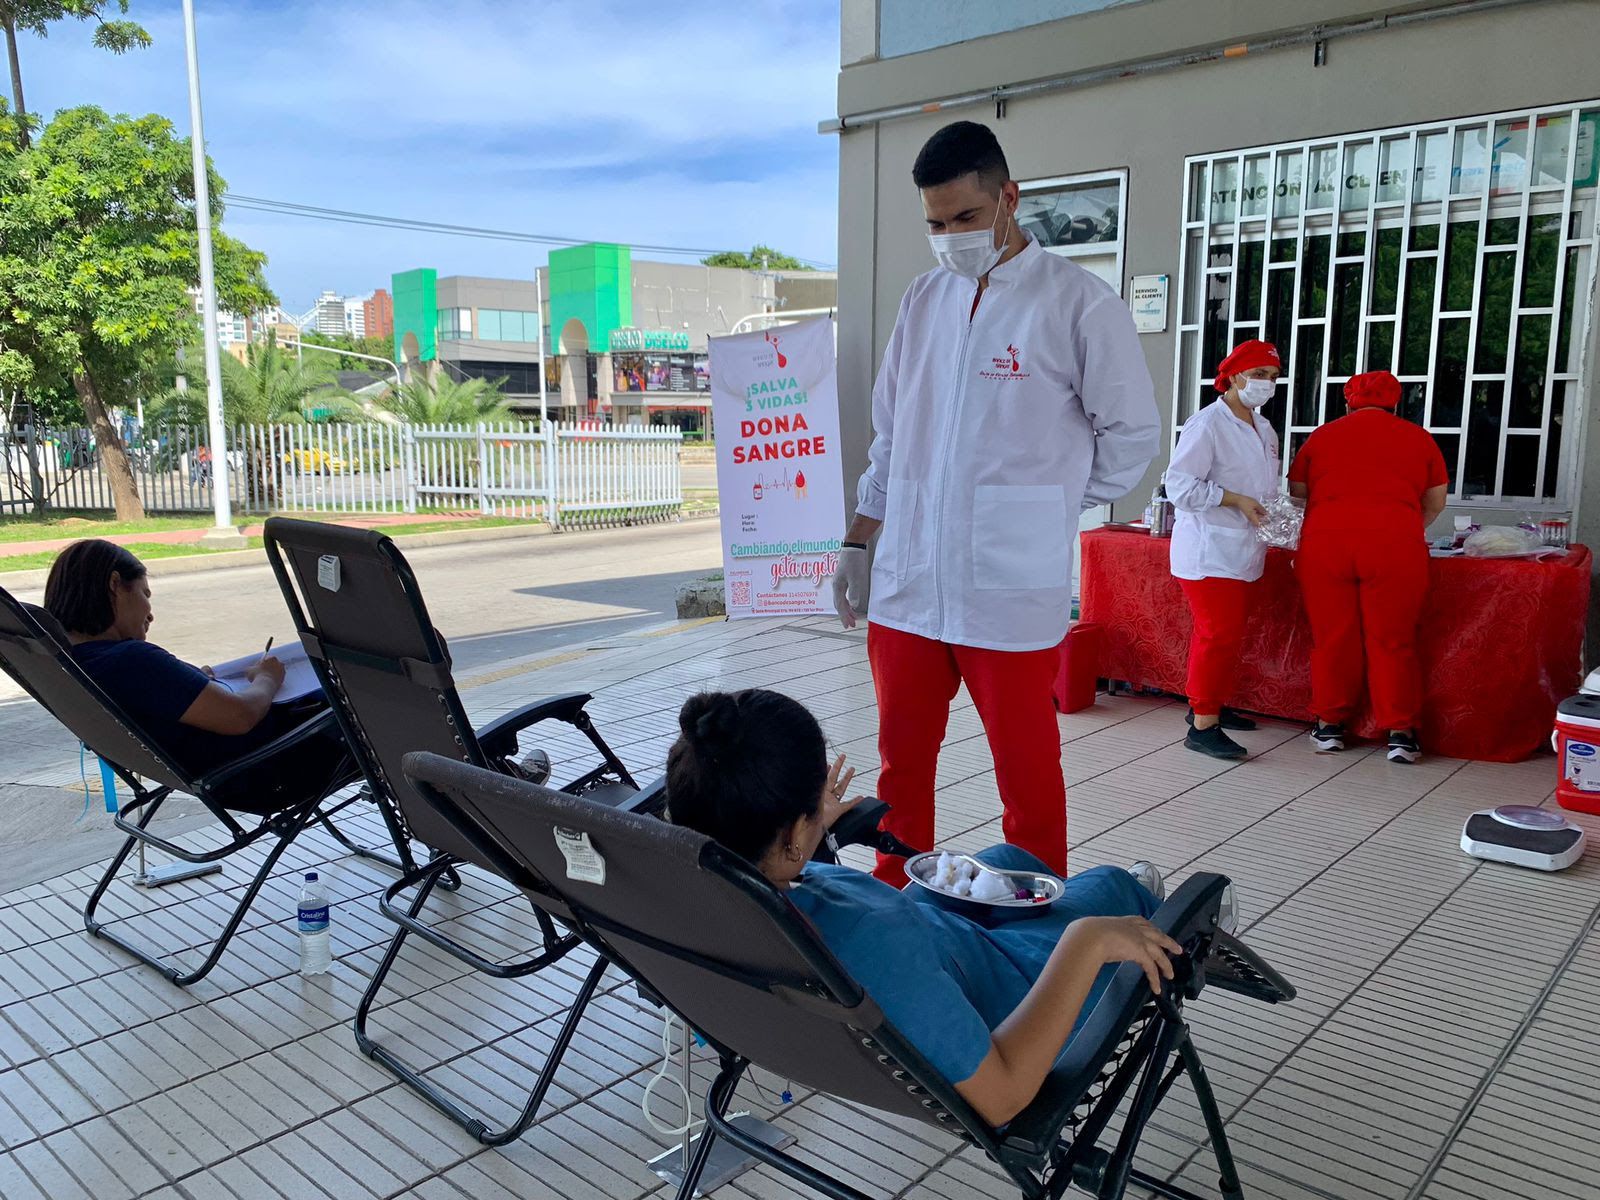 Usuarios de Transmetro en la jornada de donación de sangre.